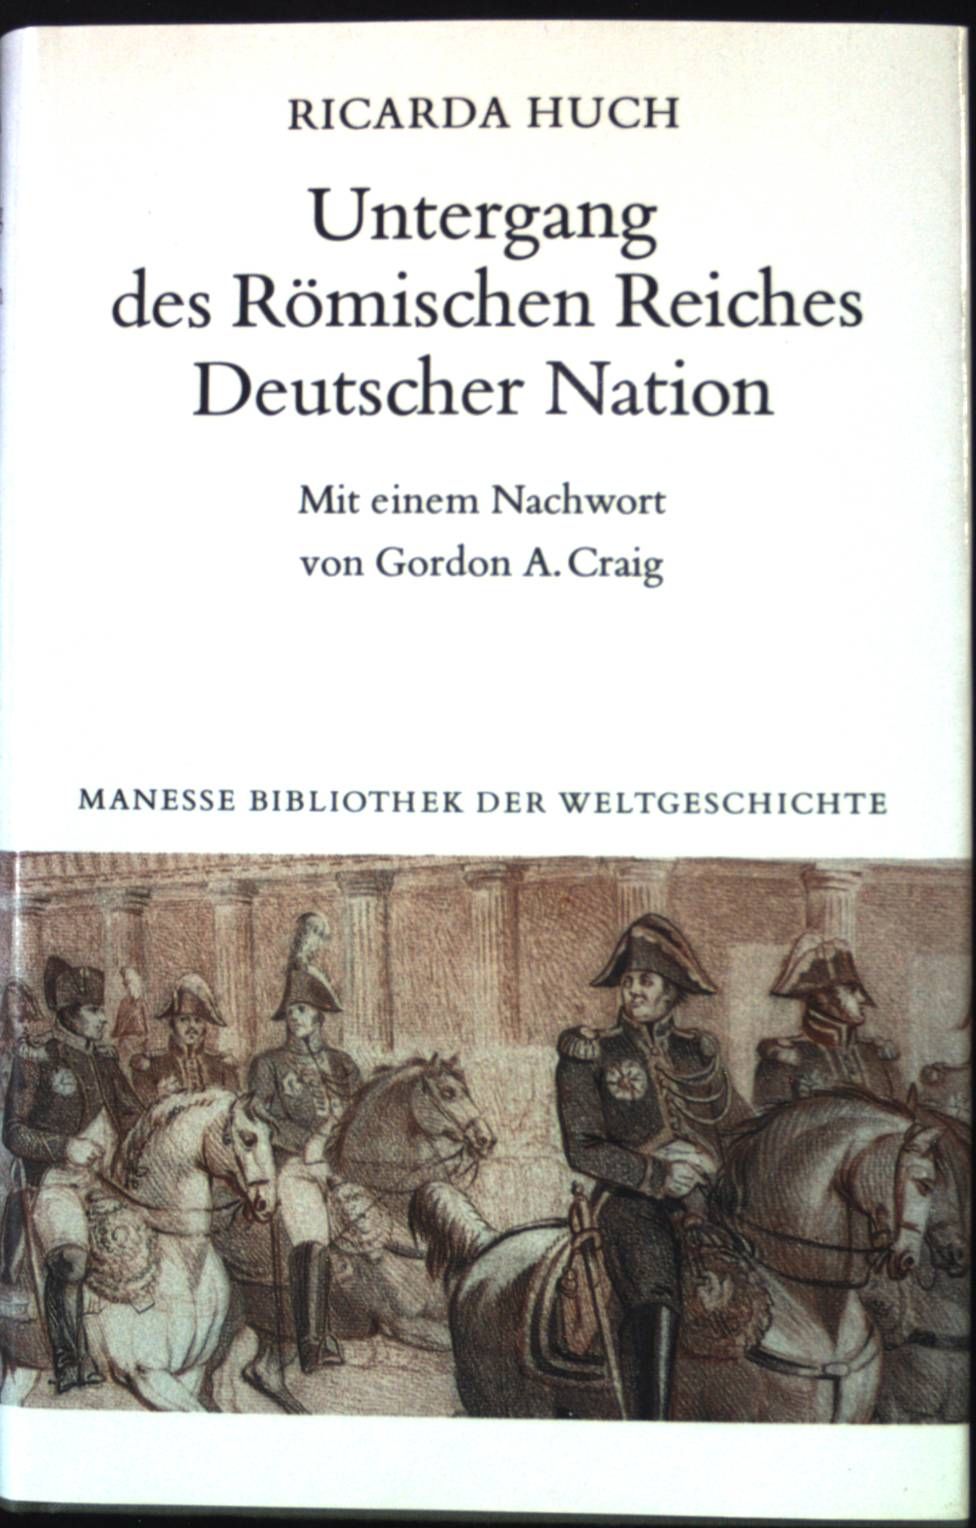 Untergang des Römischen Reiches Deutscher Nation. Deutsche Geschichte ; Bd. 3; Manesse Bibliothek der Weltgeschichte - Huch, Ricarda